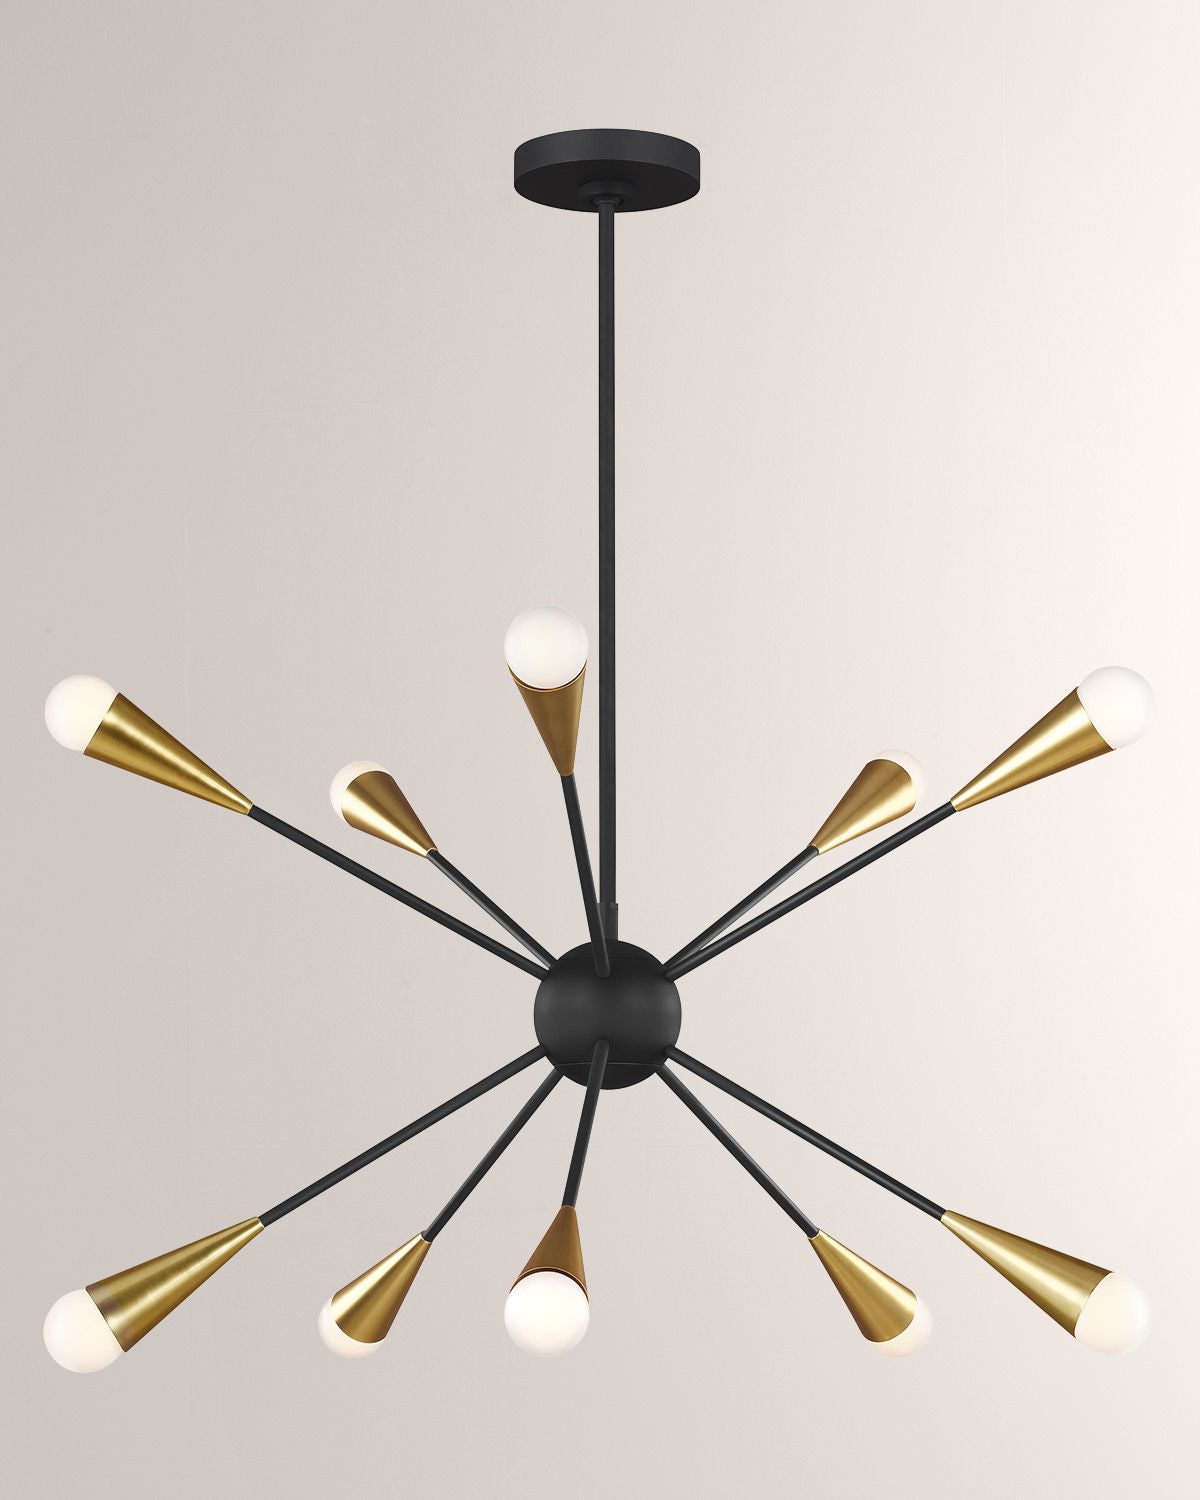 Современная люстра"Джйкоб" имеет основание из черного цвета с десятью лампами в цвете полированной латуни.